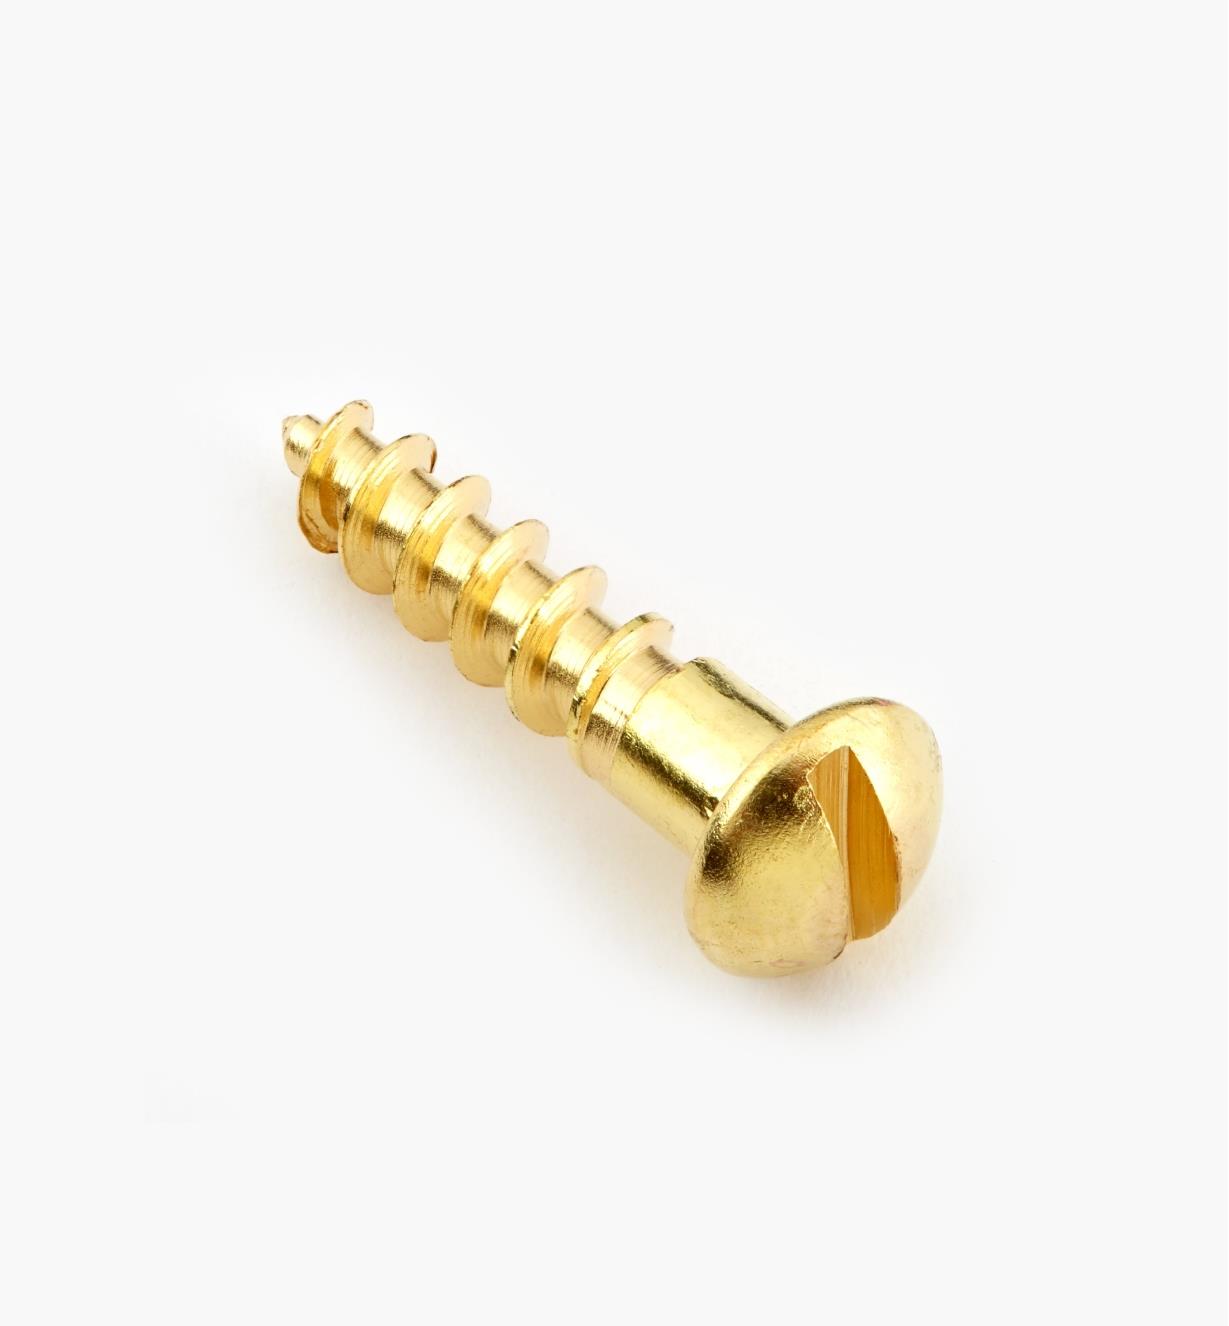 91Y0805 - #8, 3/4" Round Brass Screws, pkg. of 100